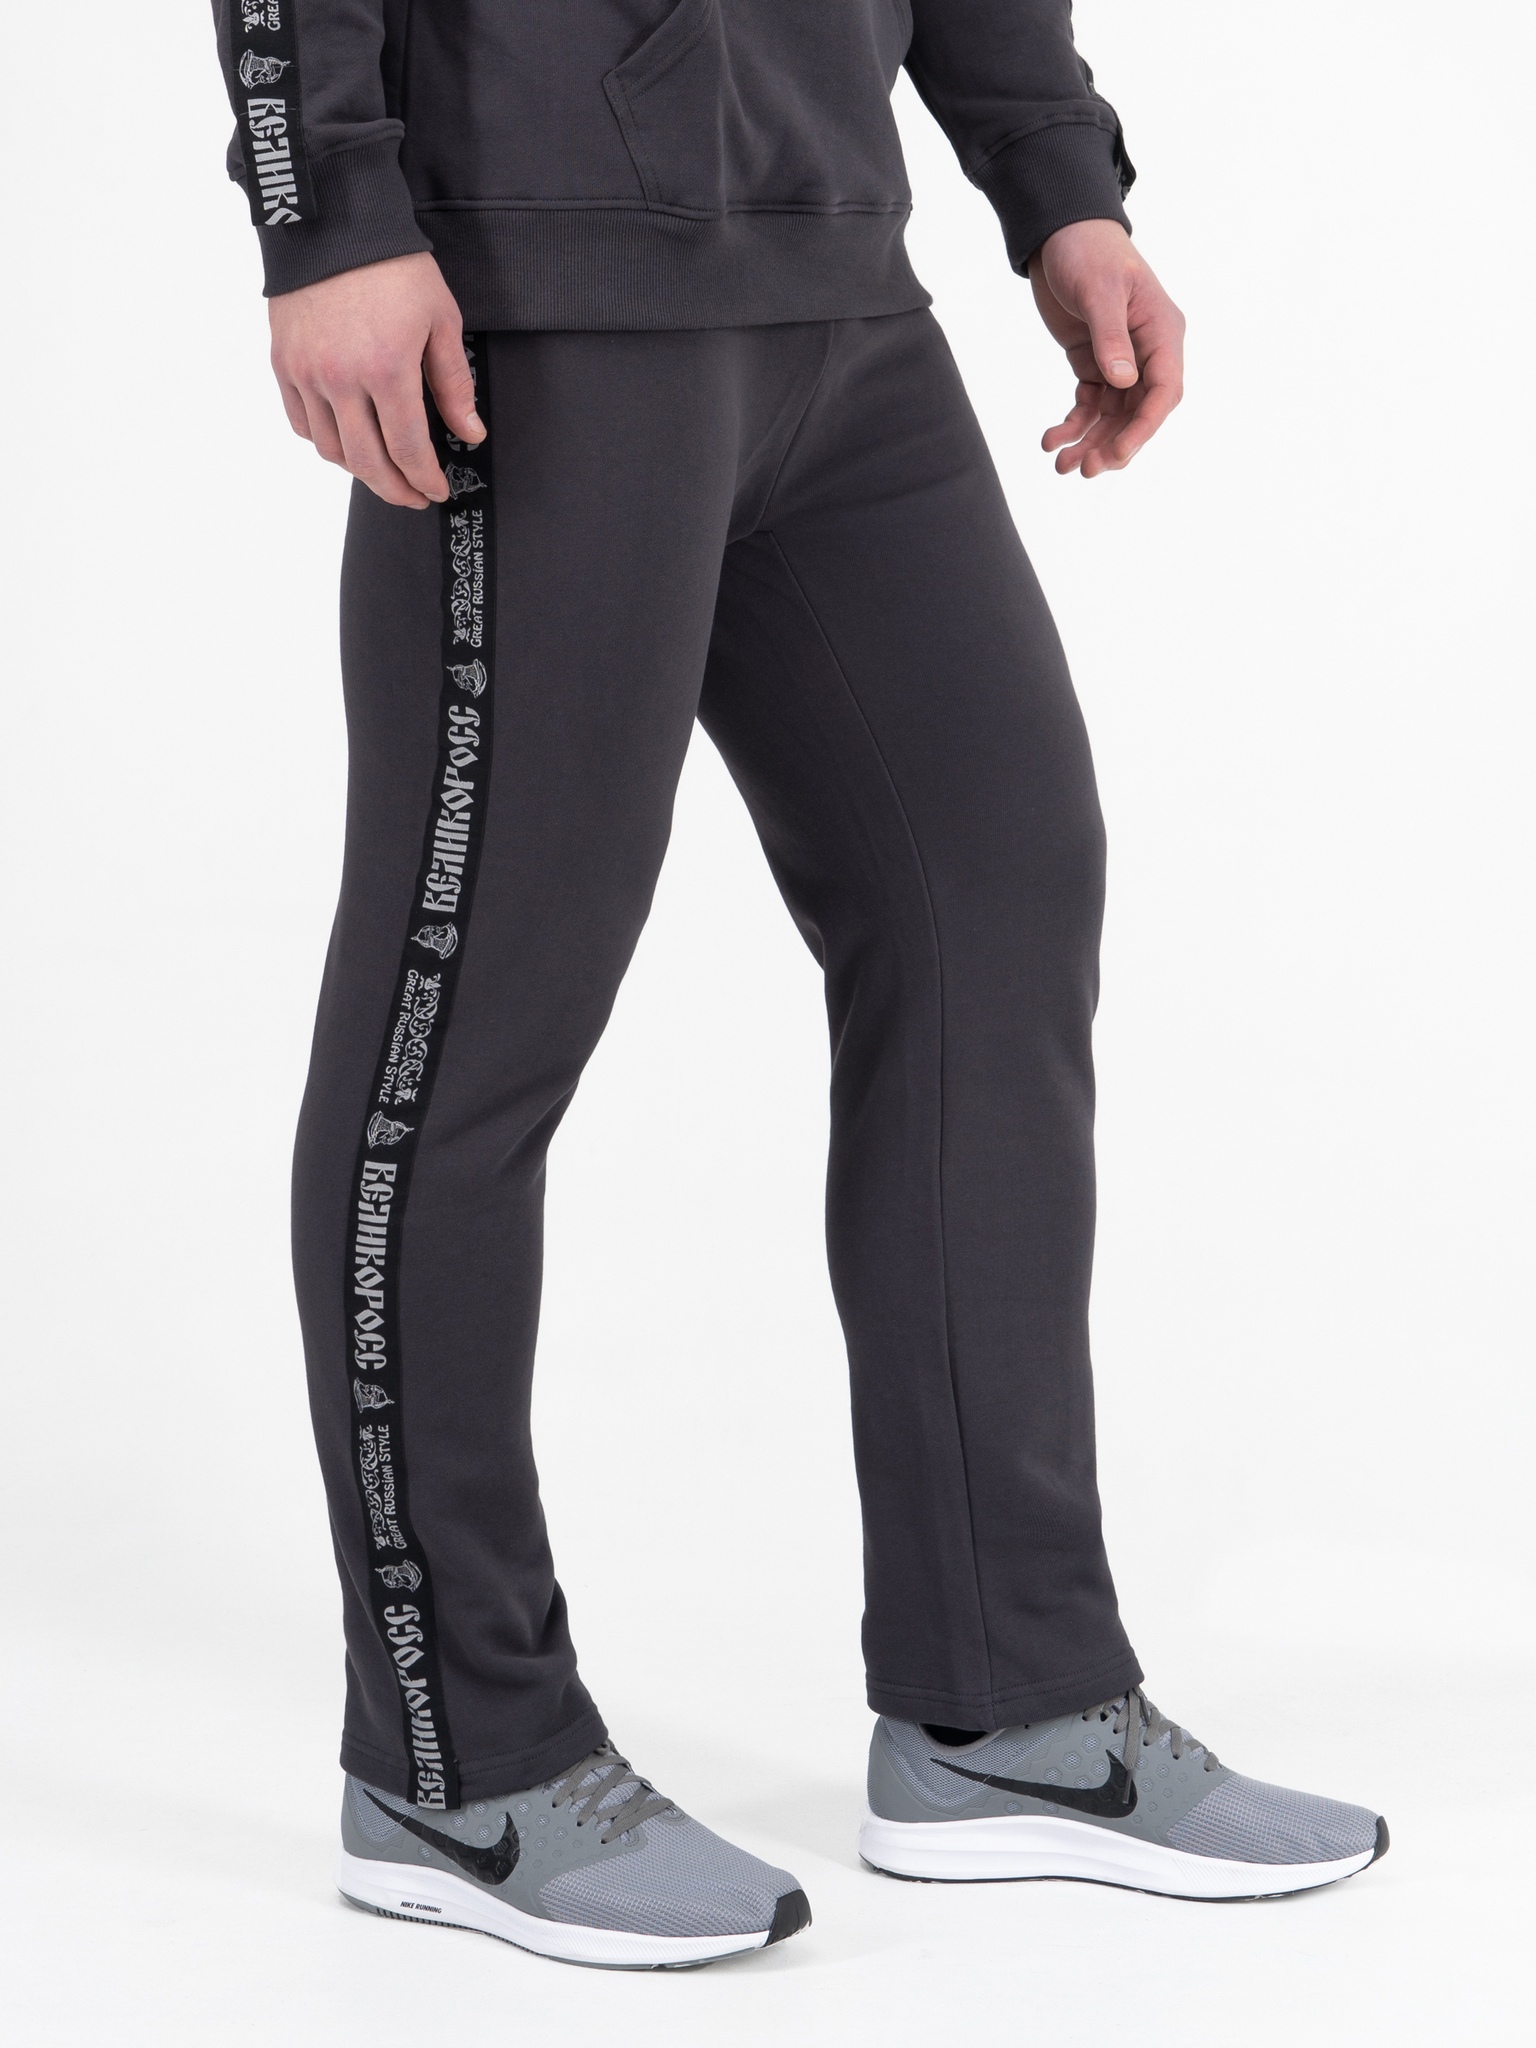 Спортивные брюки мужские Великоросс BM серые 48 RU